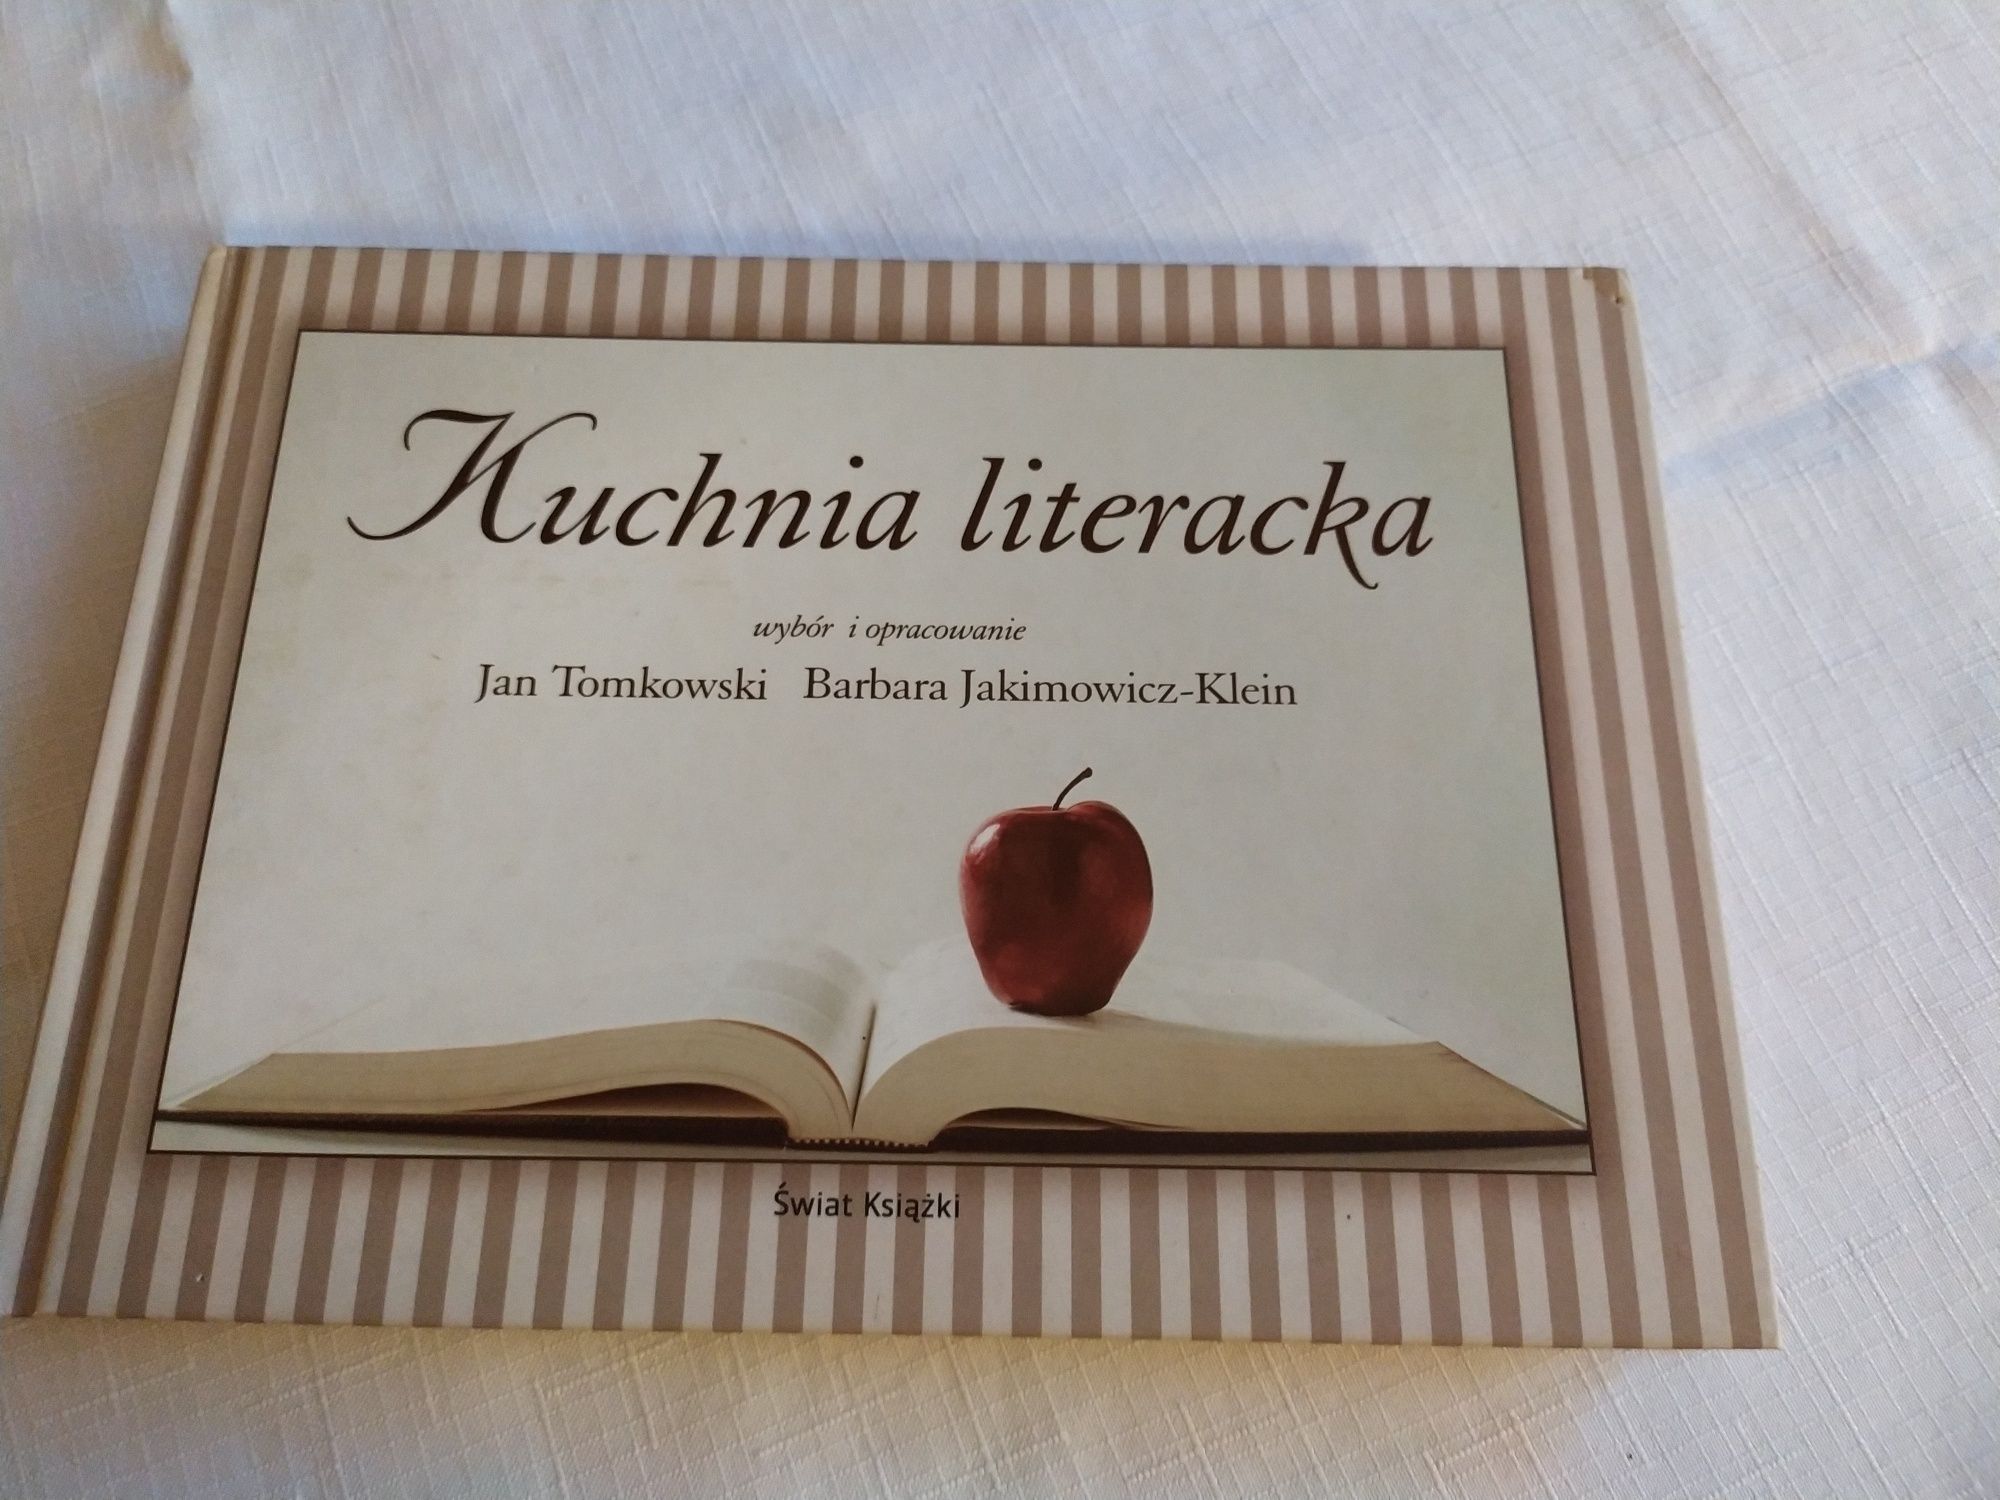 Kuchnia literacka - Jan Tomkowski Barbara Jakimowicz-Klein